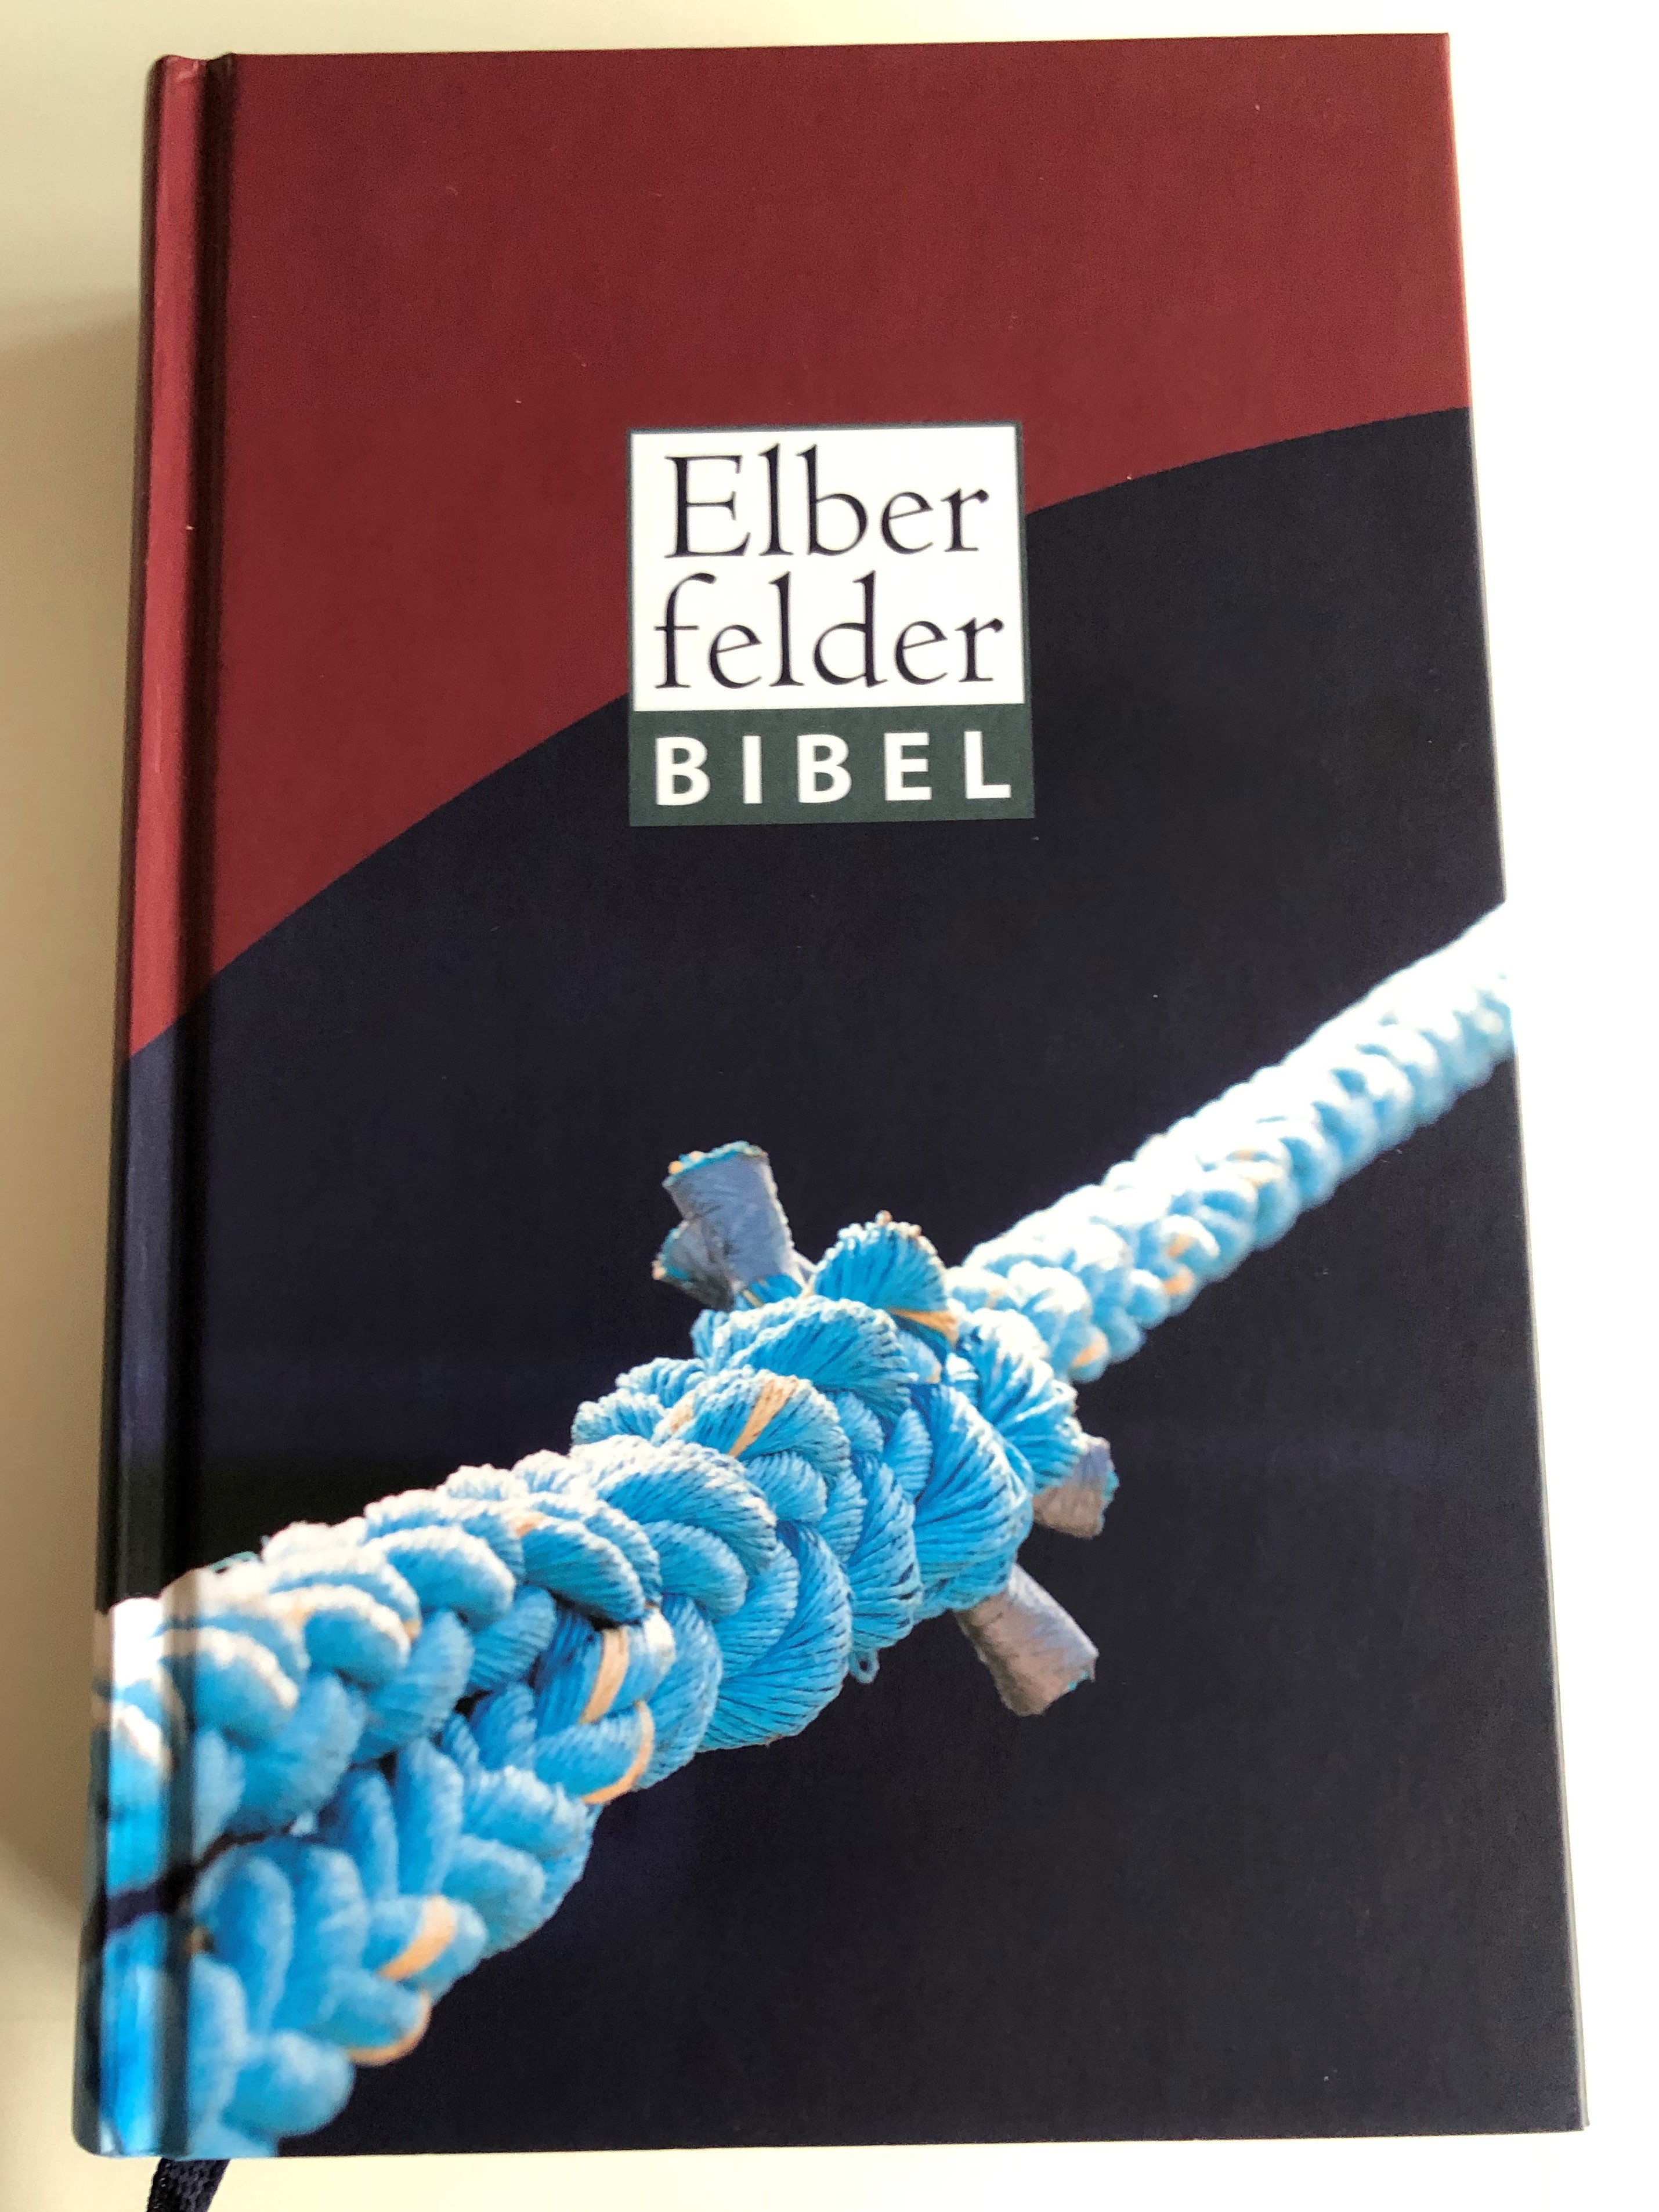 elberfelder-bibel-anchor-rope-cover-holy-bible-in-german-language-1.jpg